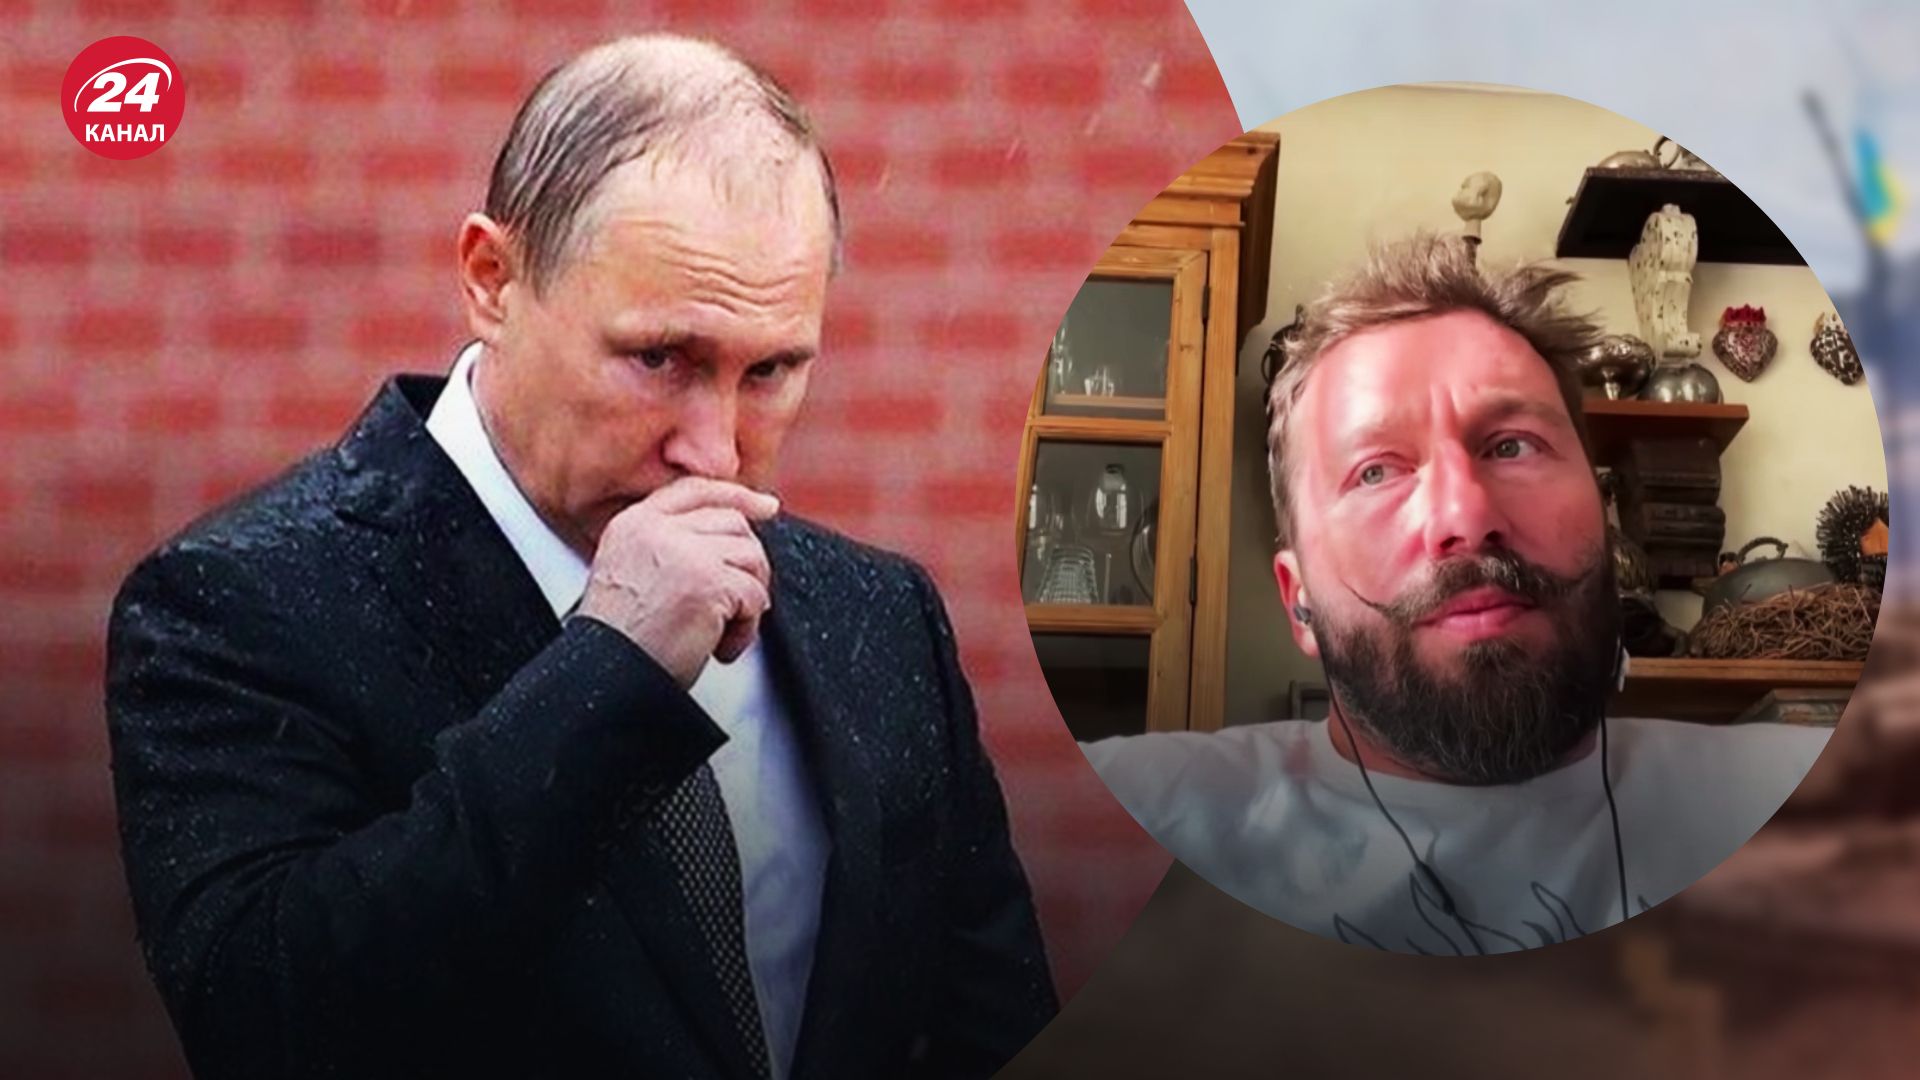 Сбросит ли Россия ядерную бомбу - Чичваркин объяснил ситуацию Путина - новости Украины - 24 Канал